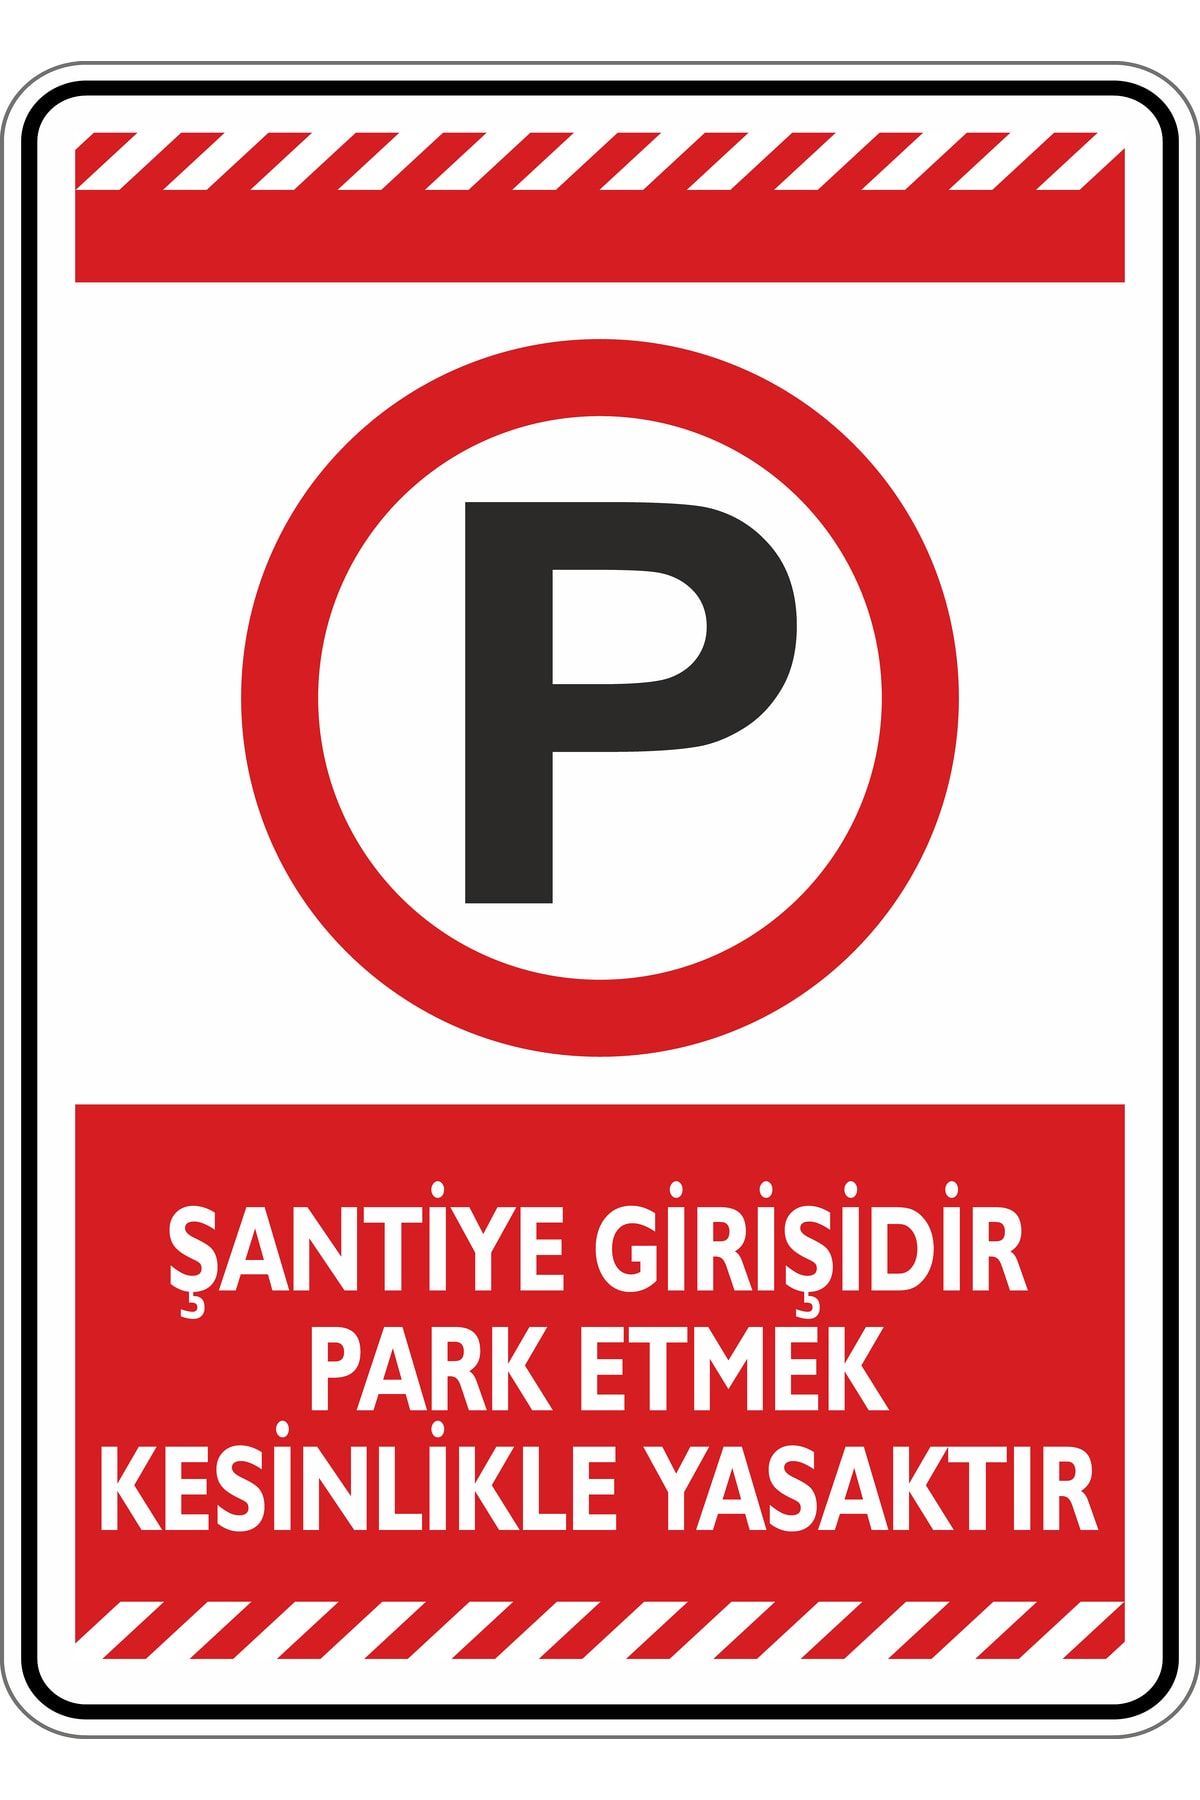 isgtabelam Şantiye Girişidir Park Etmek Kesinlikle Yasaktır/ 35x50cm / Fosforlu Etiket